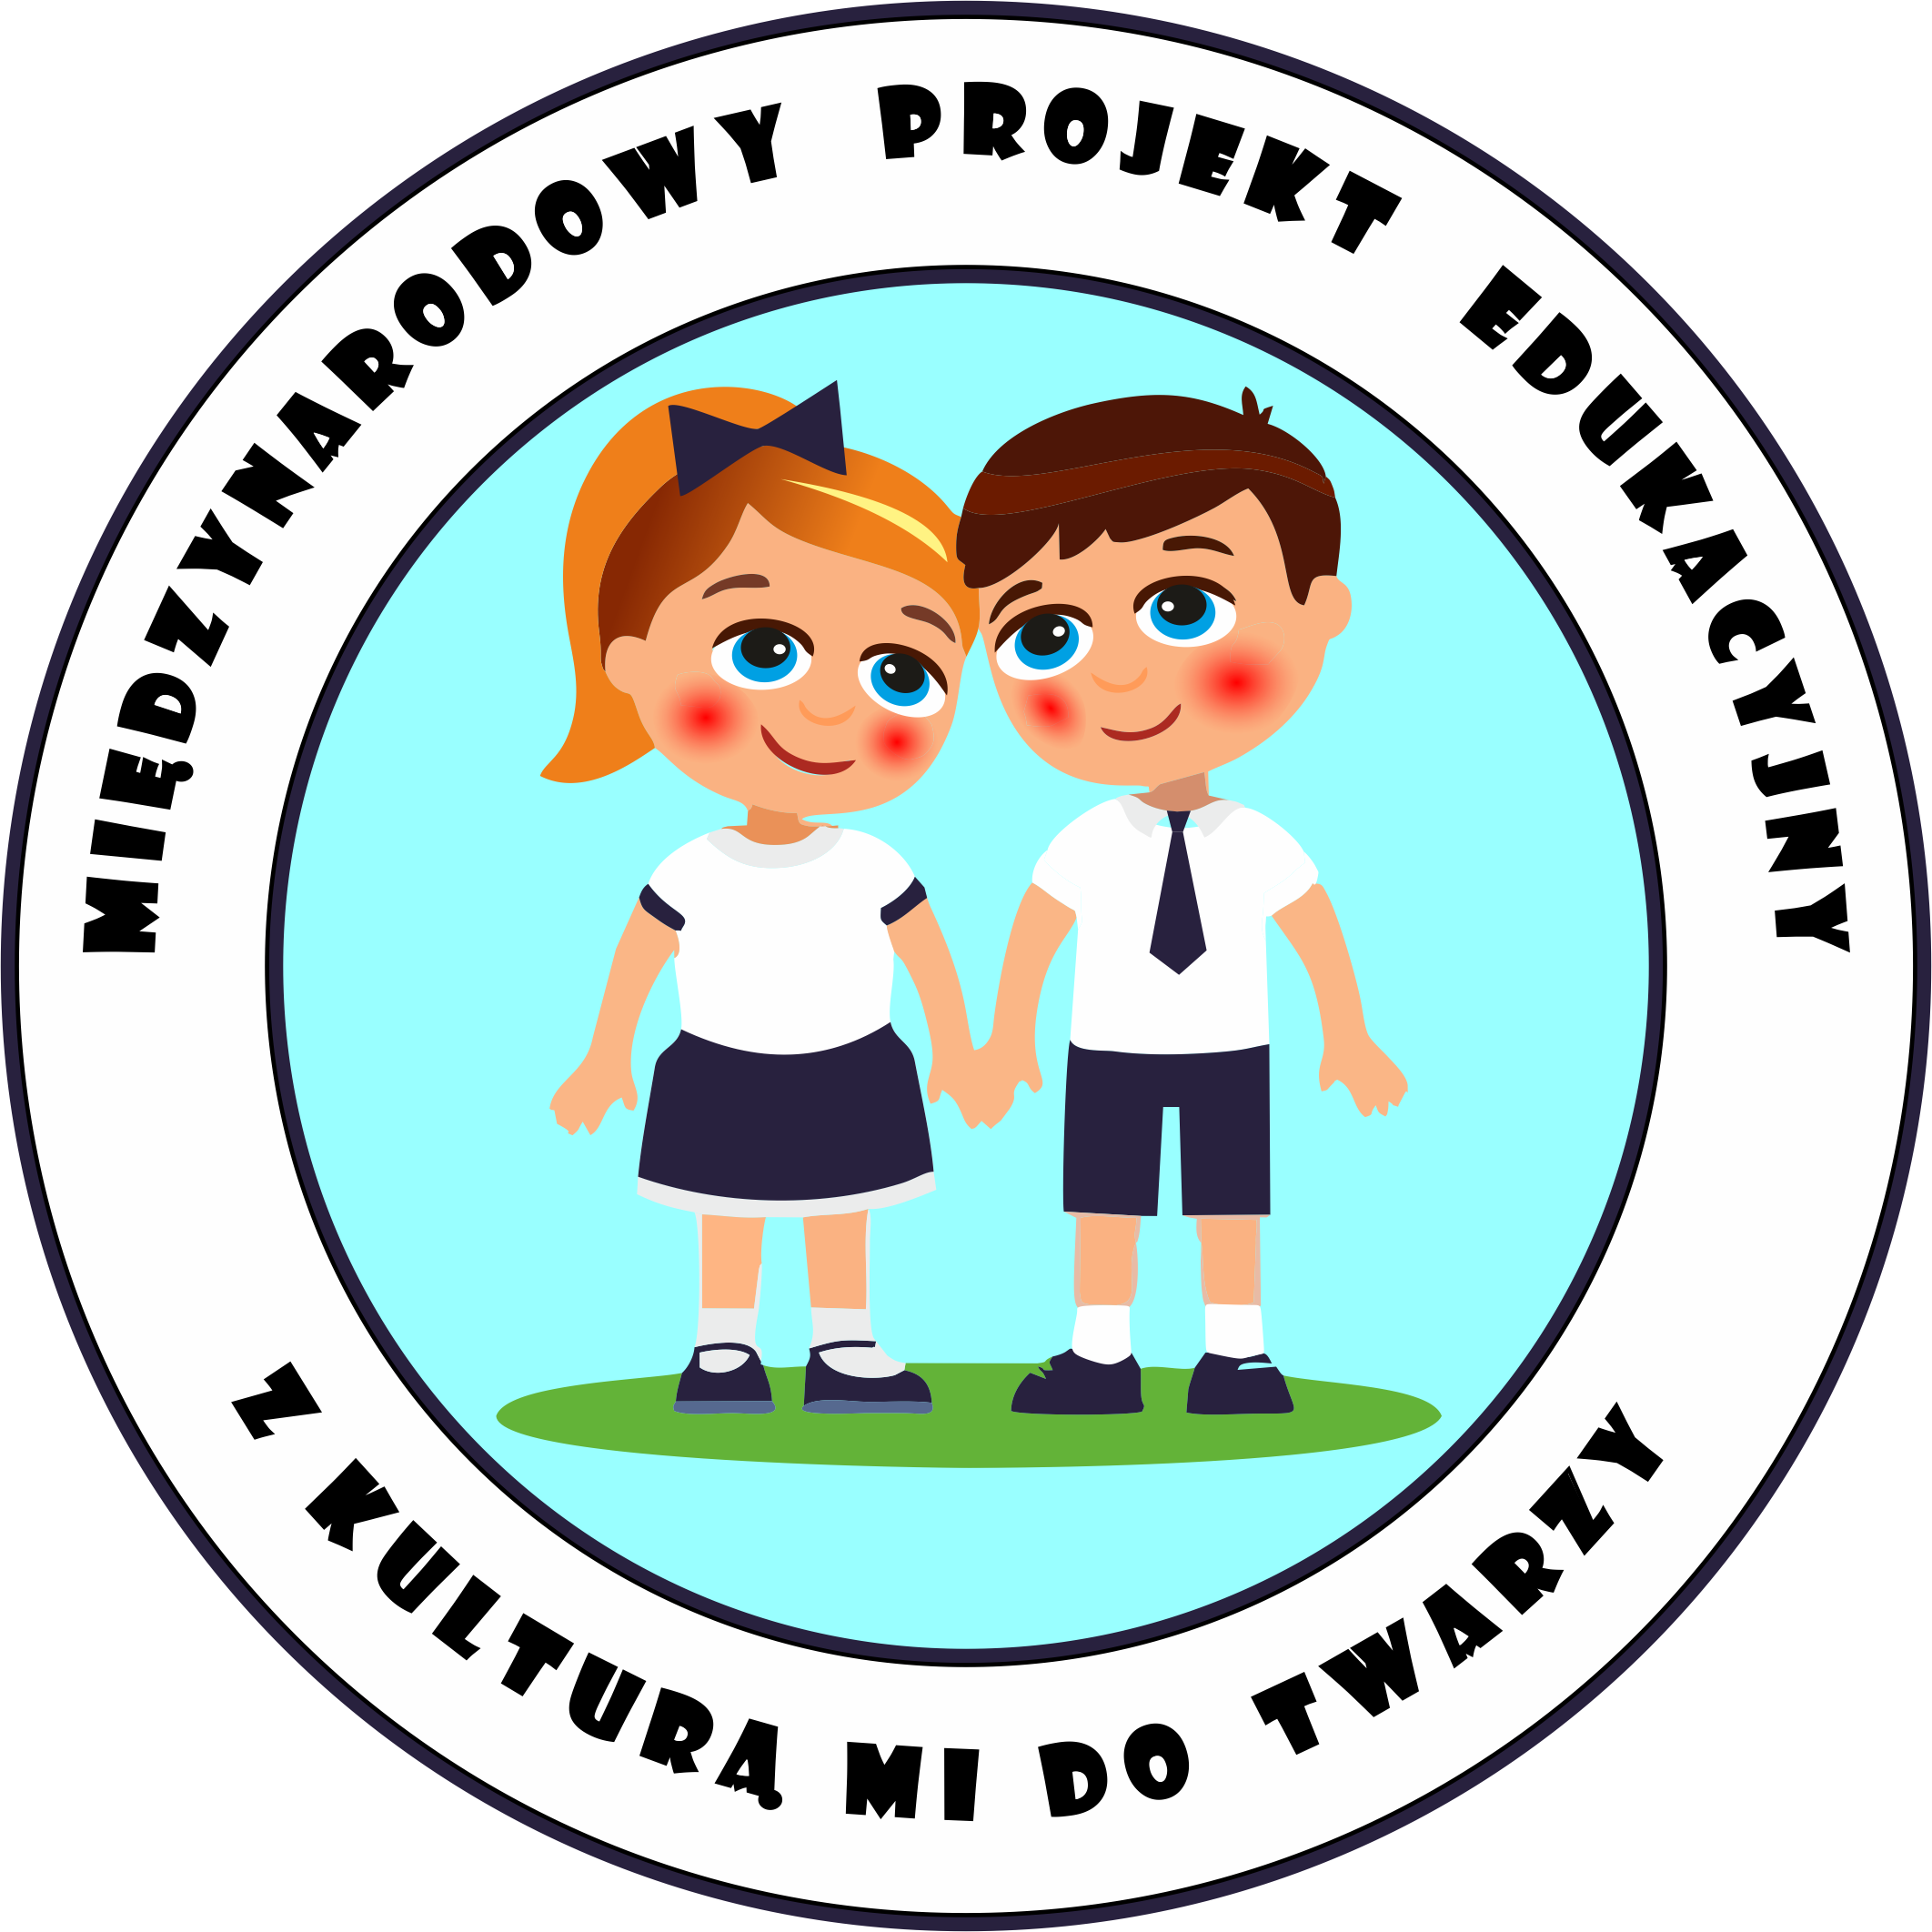 Okrągłe logo z napisem Międzynarodowy Projekt Edukacyjny Z kulturą mi do twarzy. W środku rysunek dziewczynki i chłopca trzymających się za ręce.